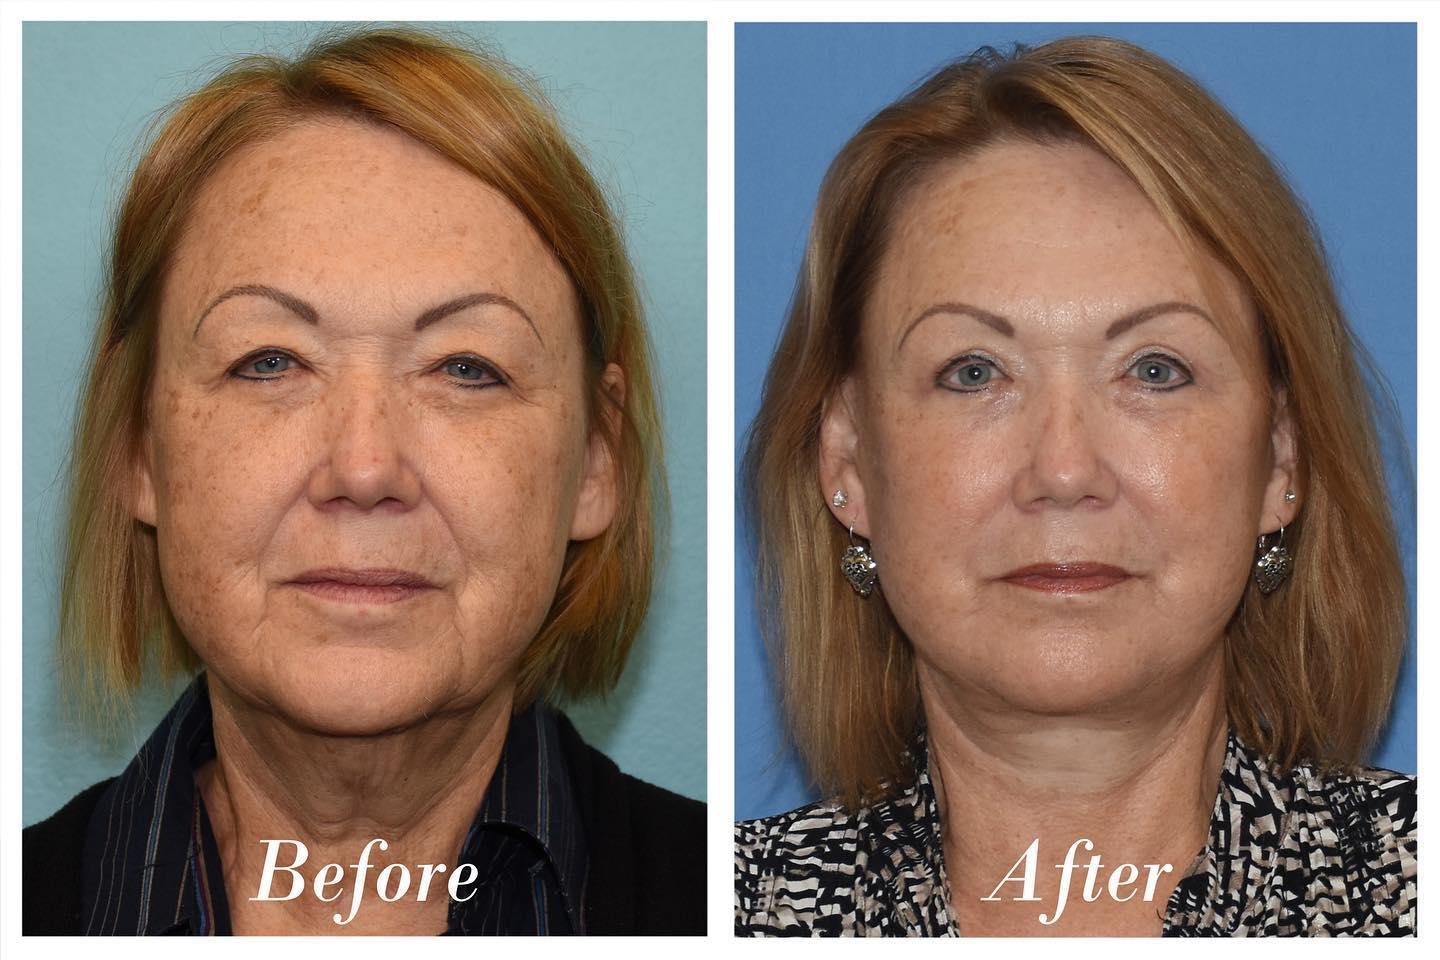 Facelift Upper Blepharoplasty Before & After Image